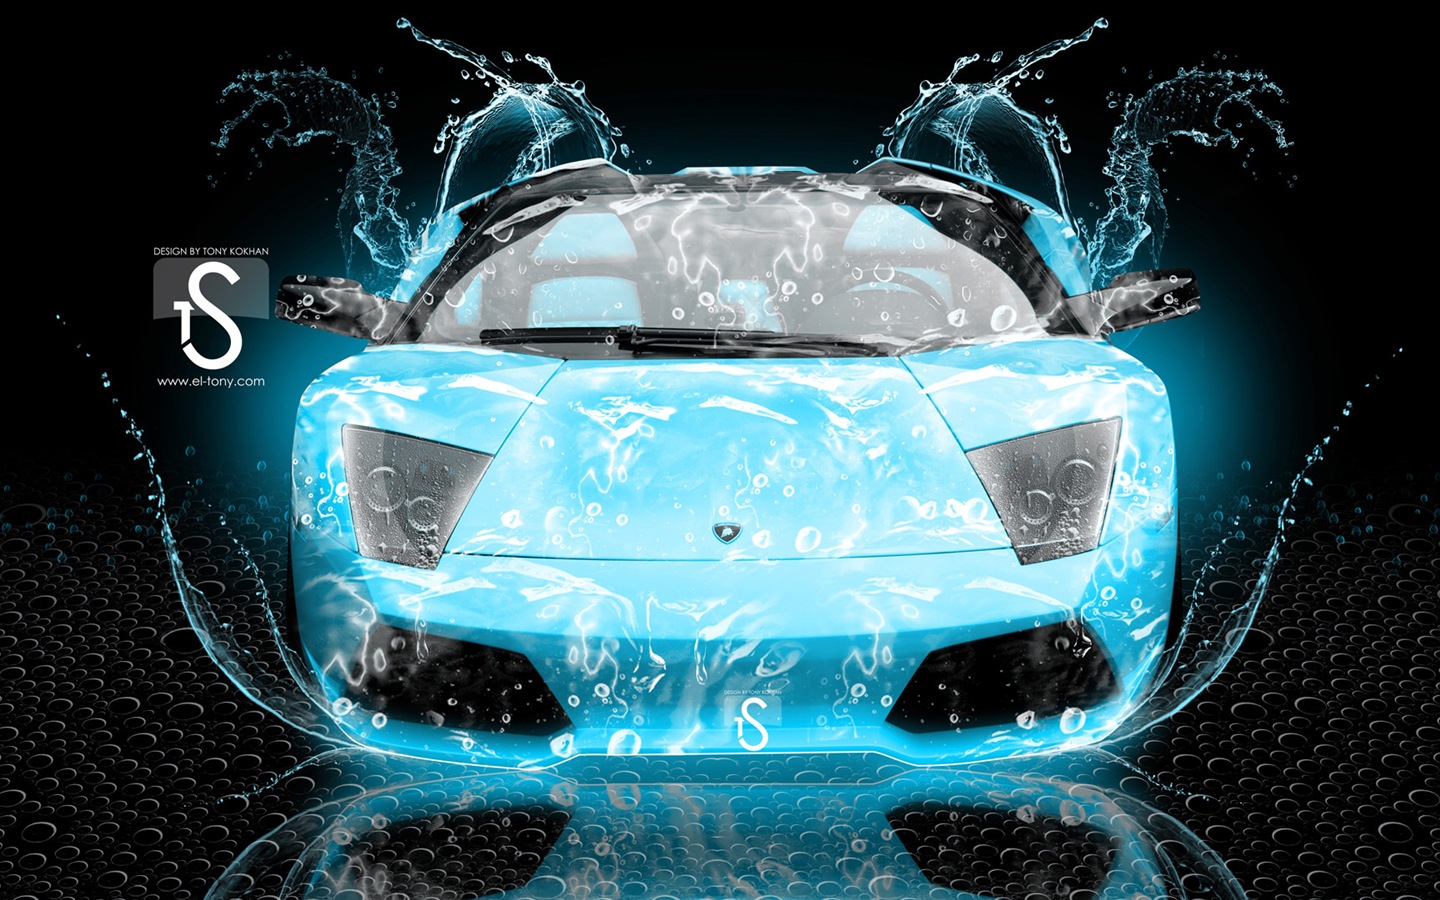 Wassertropfen spritzen, schönes Auto kreative Design Tapeten #16 - 1440x900